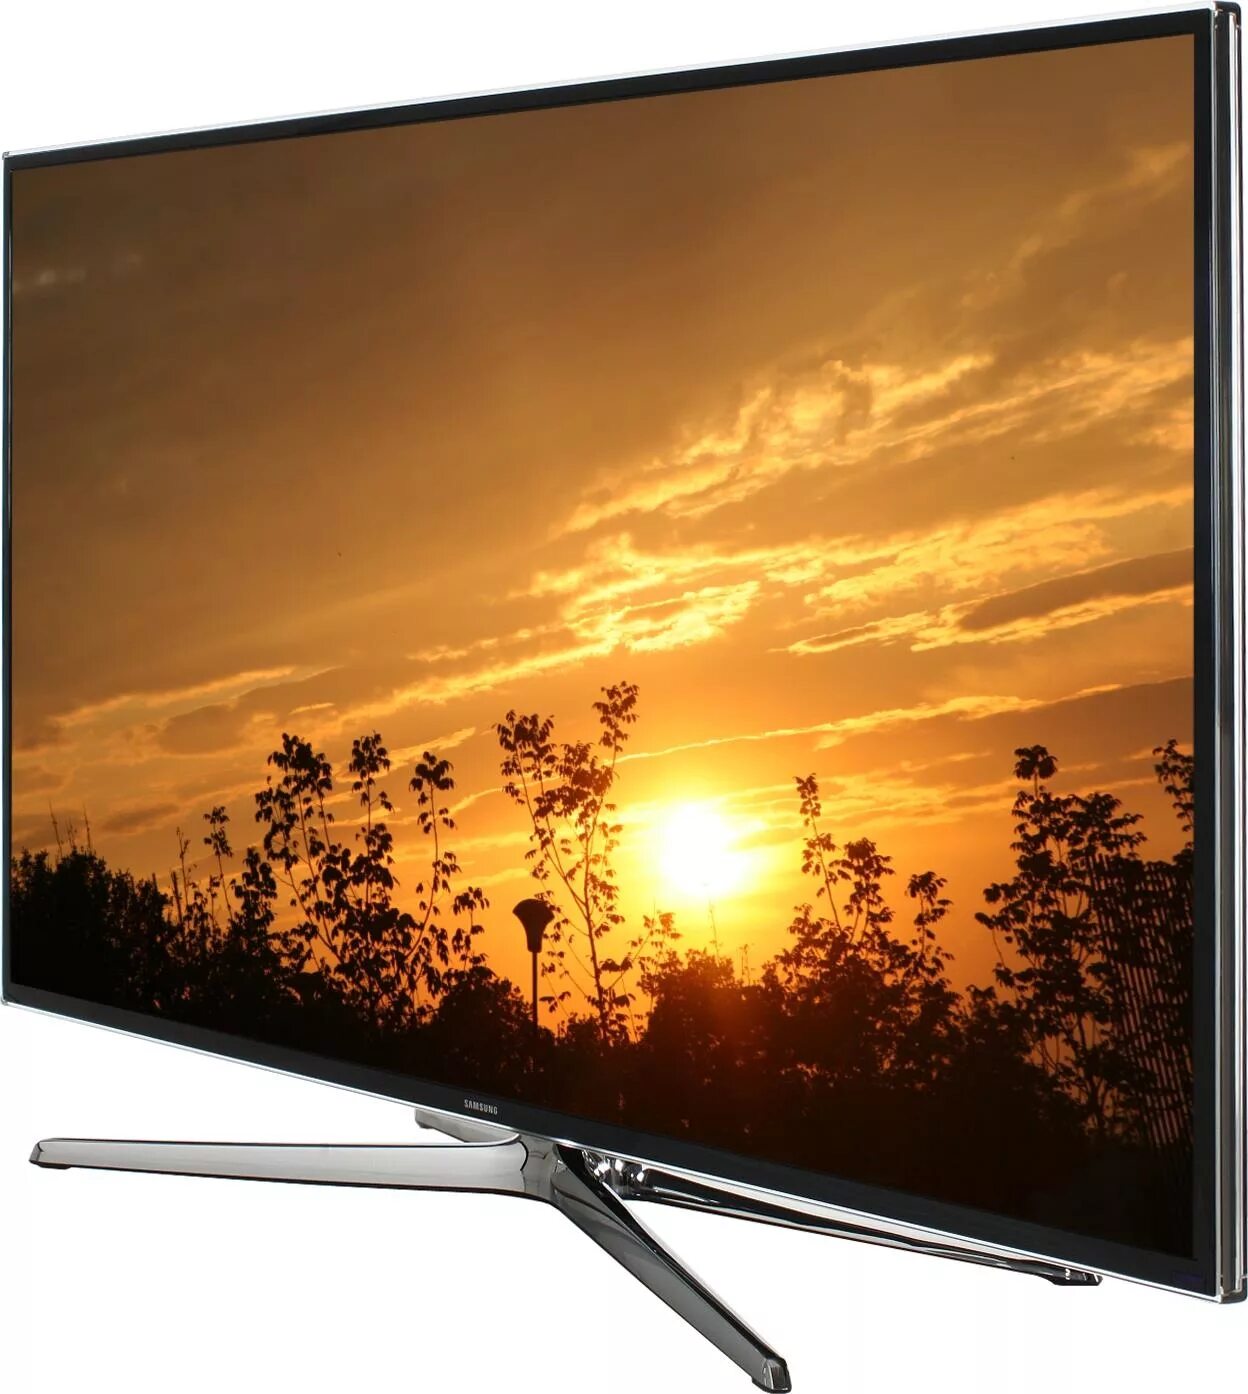 Куплю телевизор недорого краснодар. Samsung led 48 Smart TV. Samsung led 40 Smart TV 2014. Samsung led 40 Smart TV 2013. Телевизор Samsung ue48h6230.